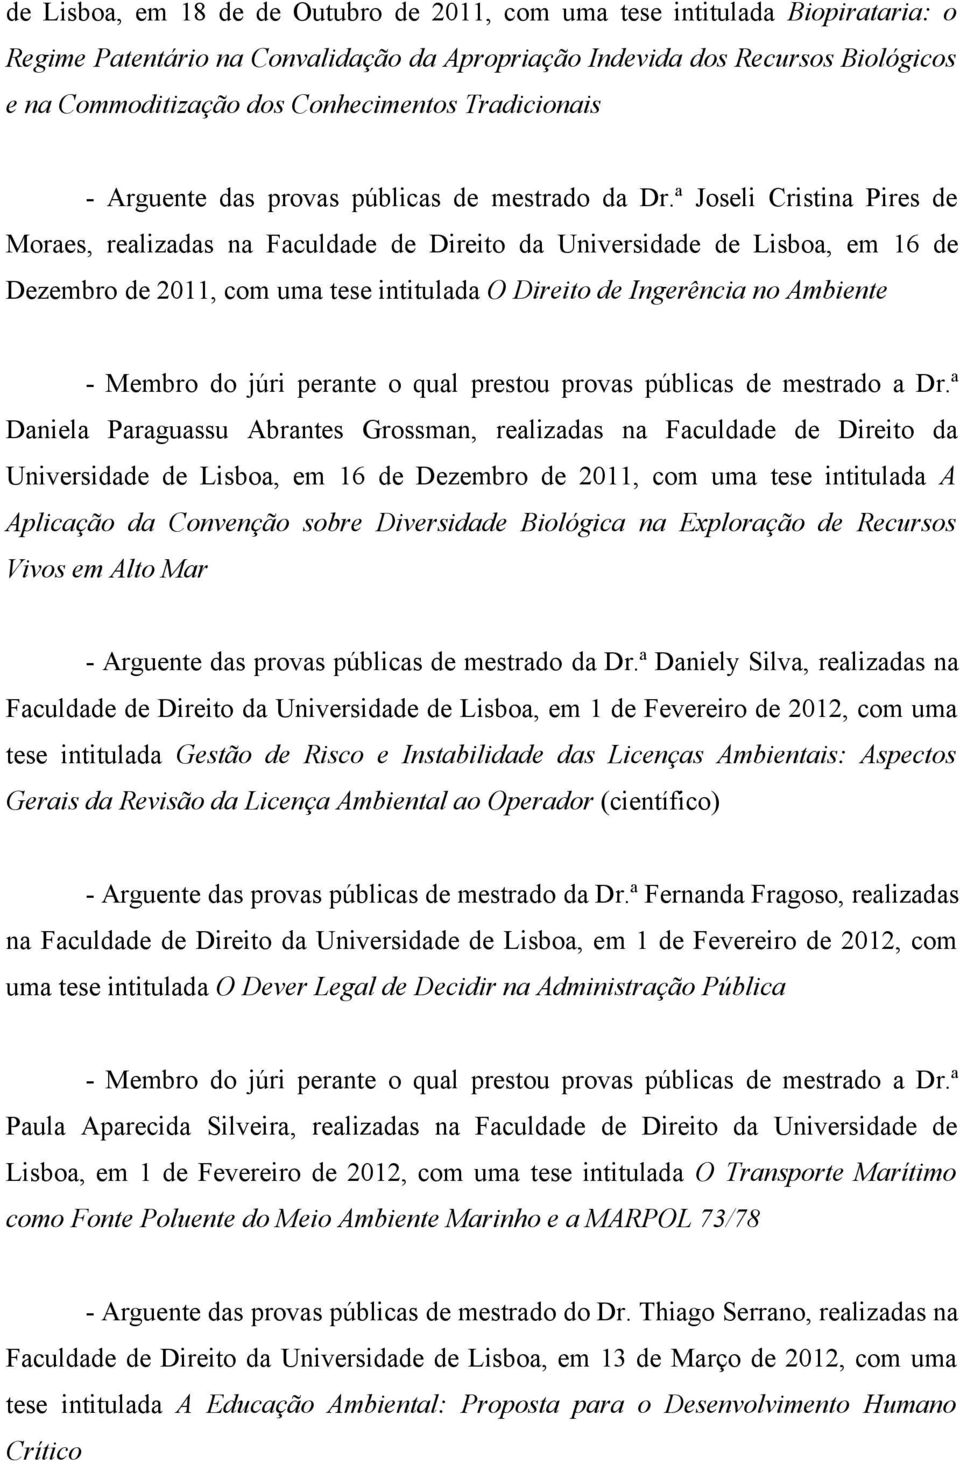 ª Joseli Cristina Pires de Moraes, realizadas na Faculdade de Direito da Universidade de Lisboa, em 16 de Dezembro de 2011, com uma tese intitulada O Direito de Ingerência no Ambiente - Membro do